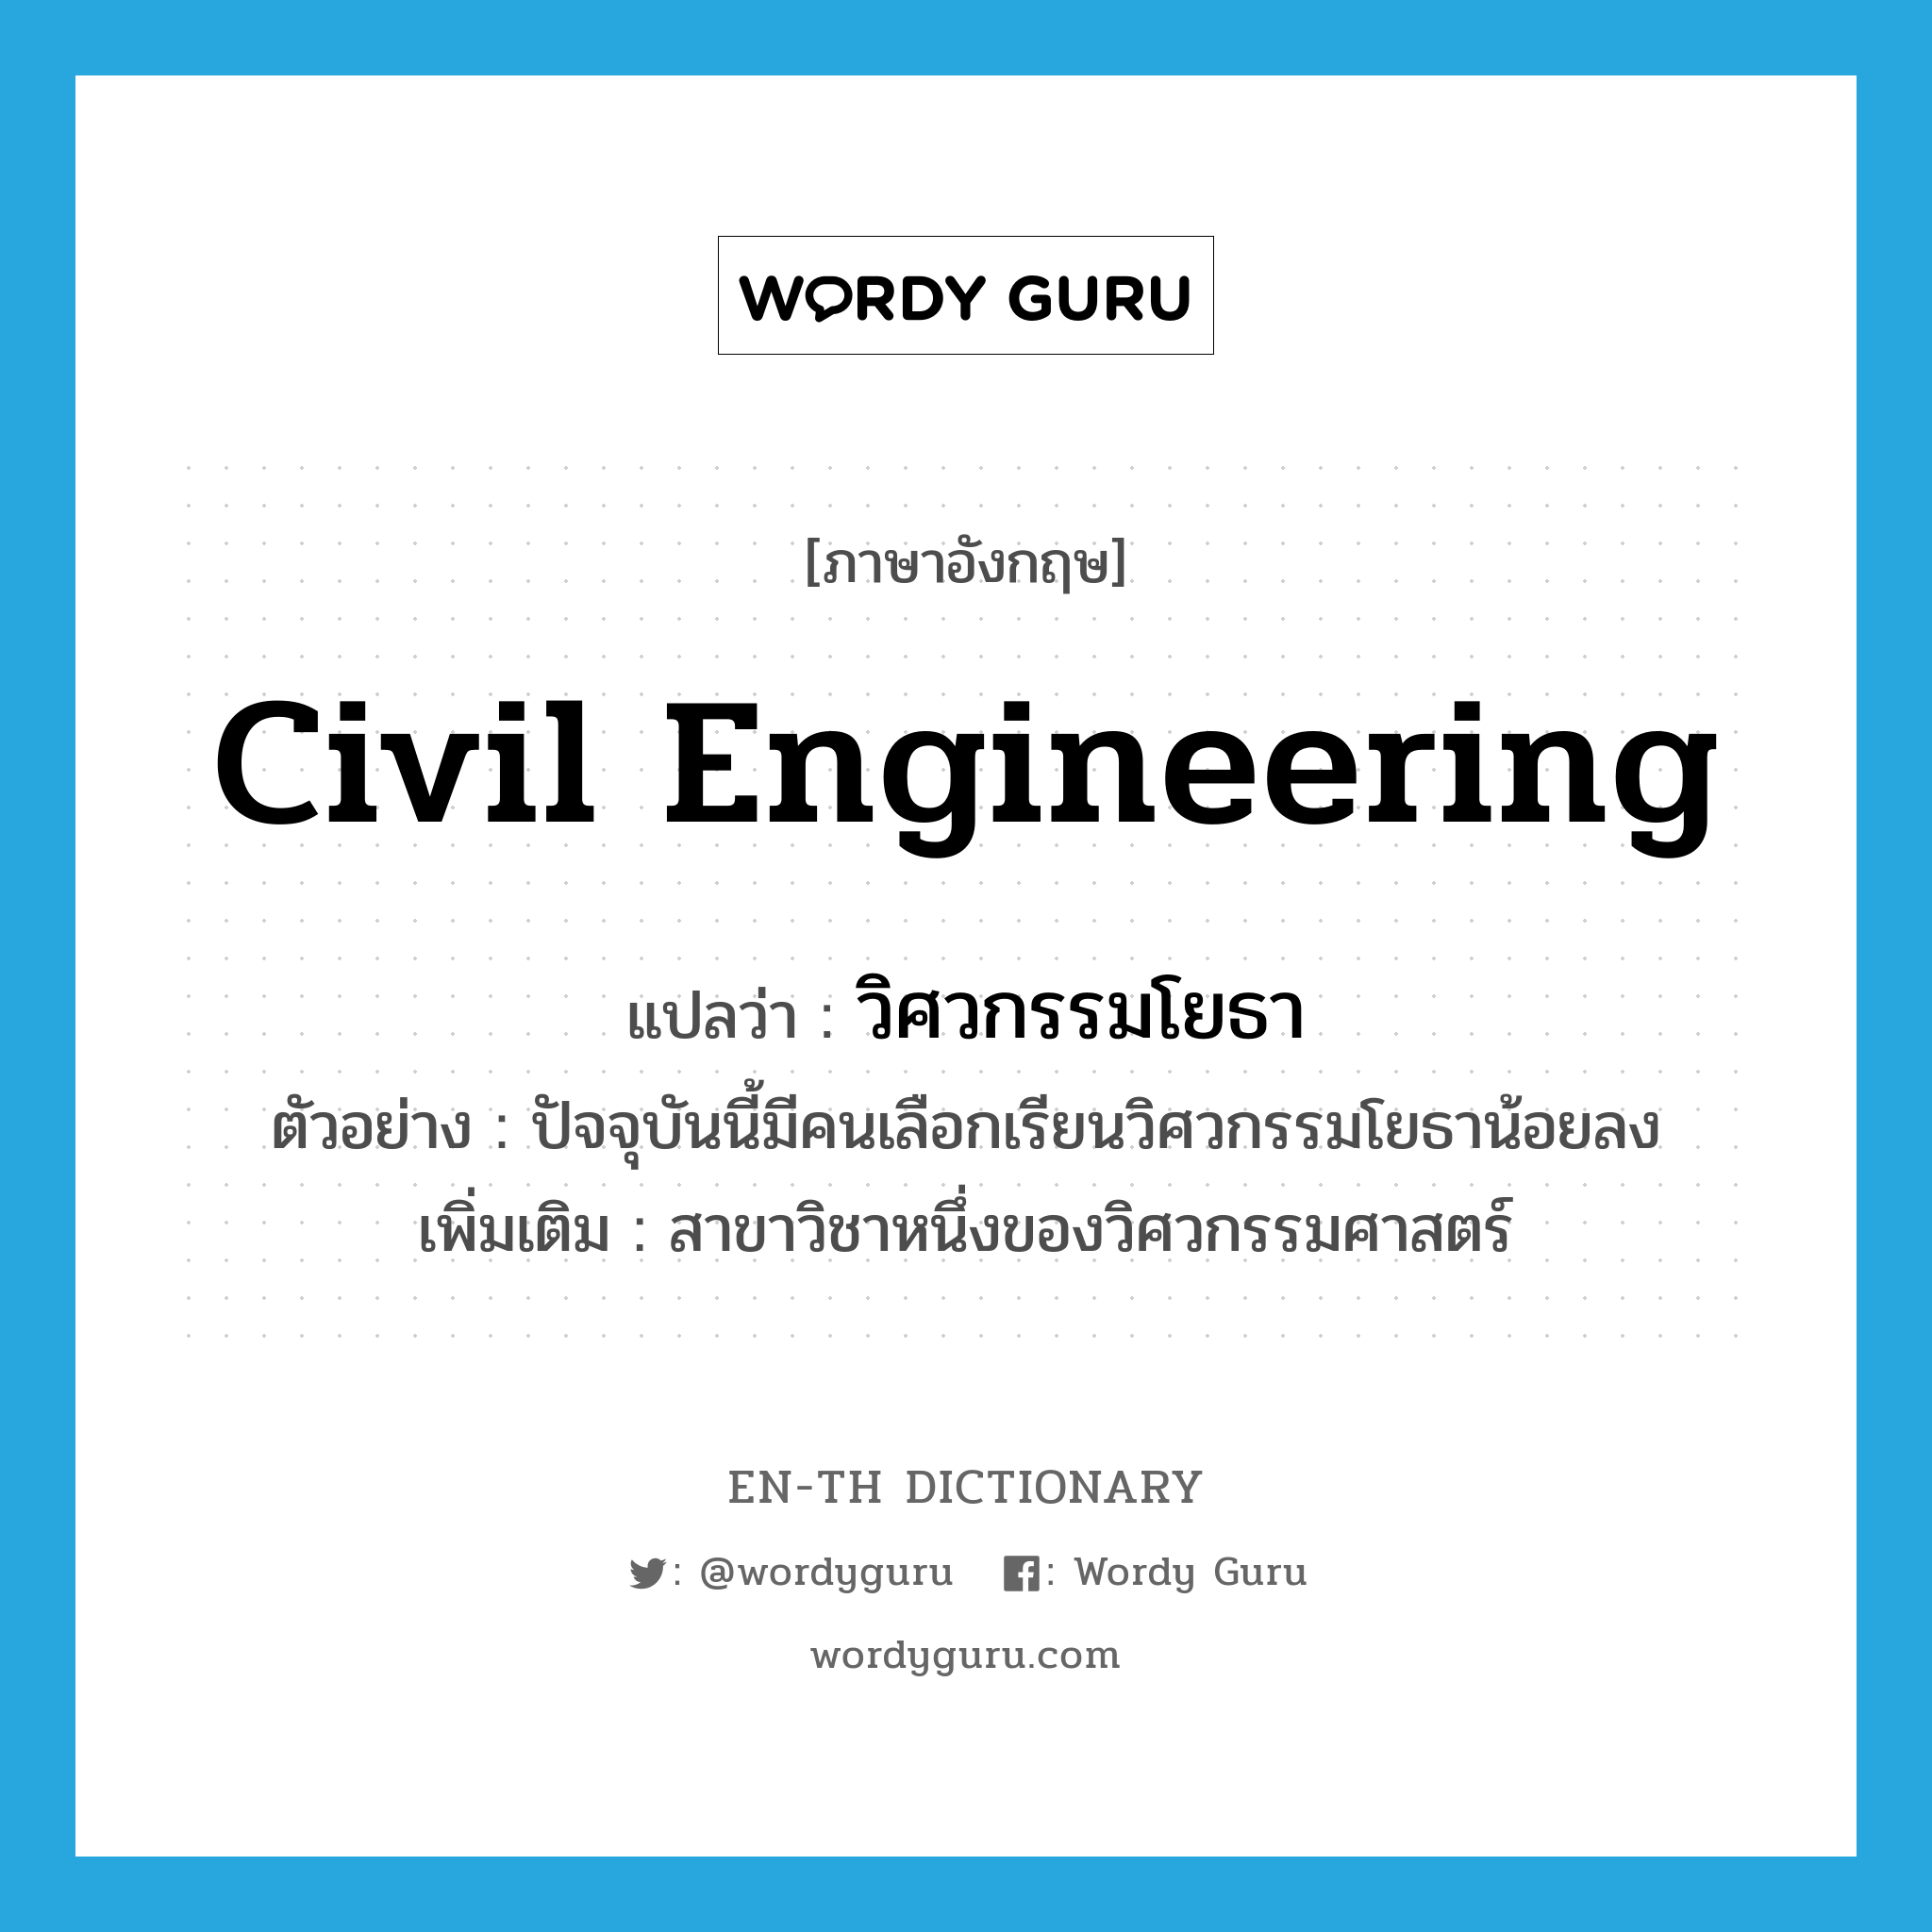 civil engineering แปลว่า?, คำศัพท์ภาษาอังกฤษ civil engineering แปลว่า วิศวกรรมโยธา ประเภท N ตัวอย่าง ปัจจุบันนี้มีคนเลือกเรียนวิศวกรรมโยธาน้อยลง เพิ่มเติม สาขาวิชาหนึ่งของวิศวกรรมศาสตร์ หมวด N